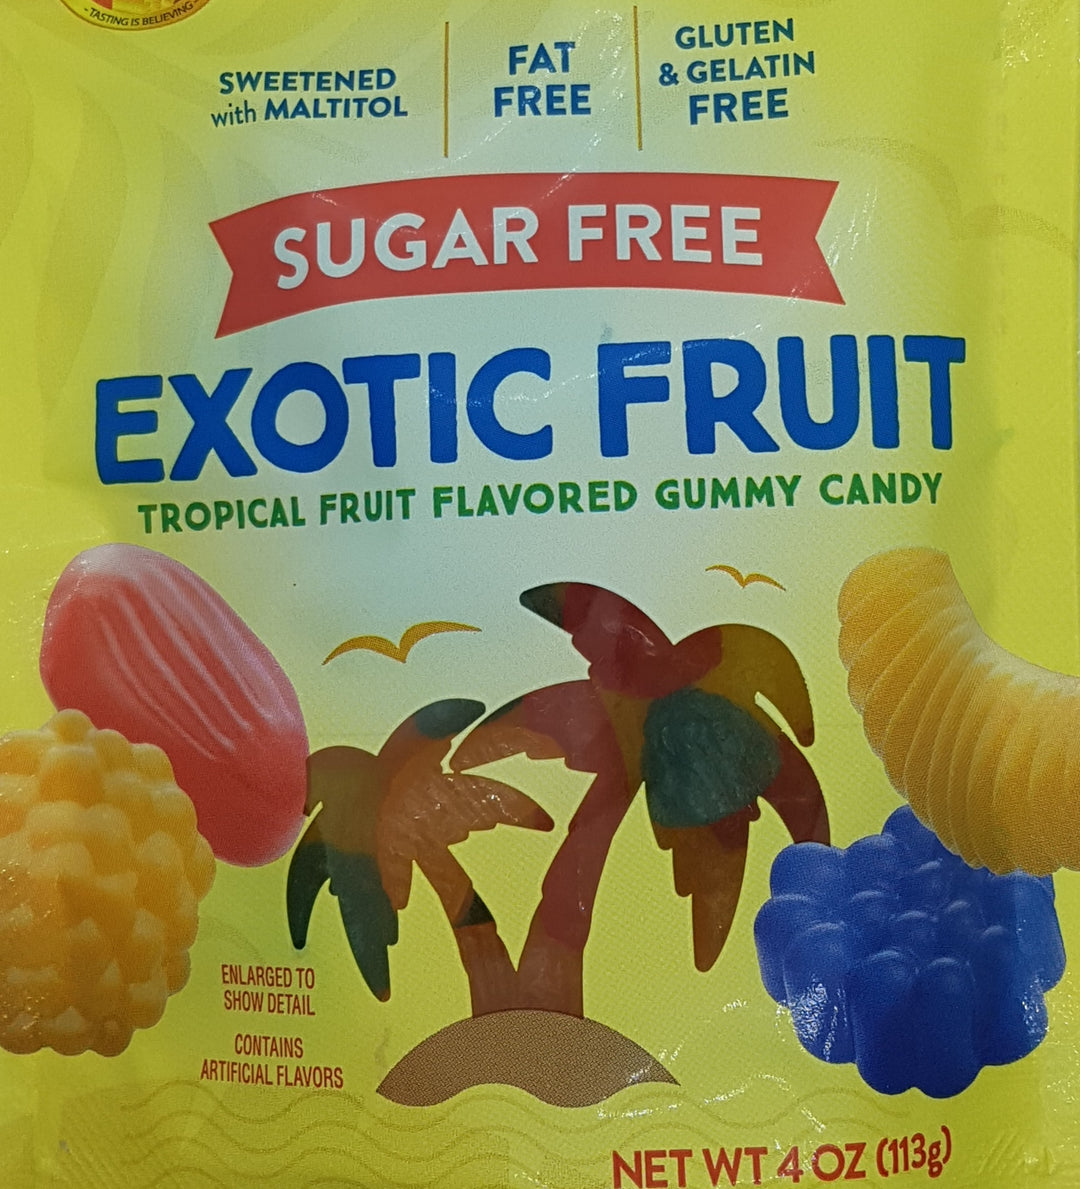 Sugar Free Exotic fruits 4 oz GLUTEN FREE, GELATIN FREE